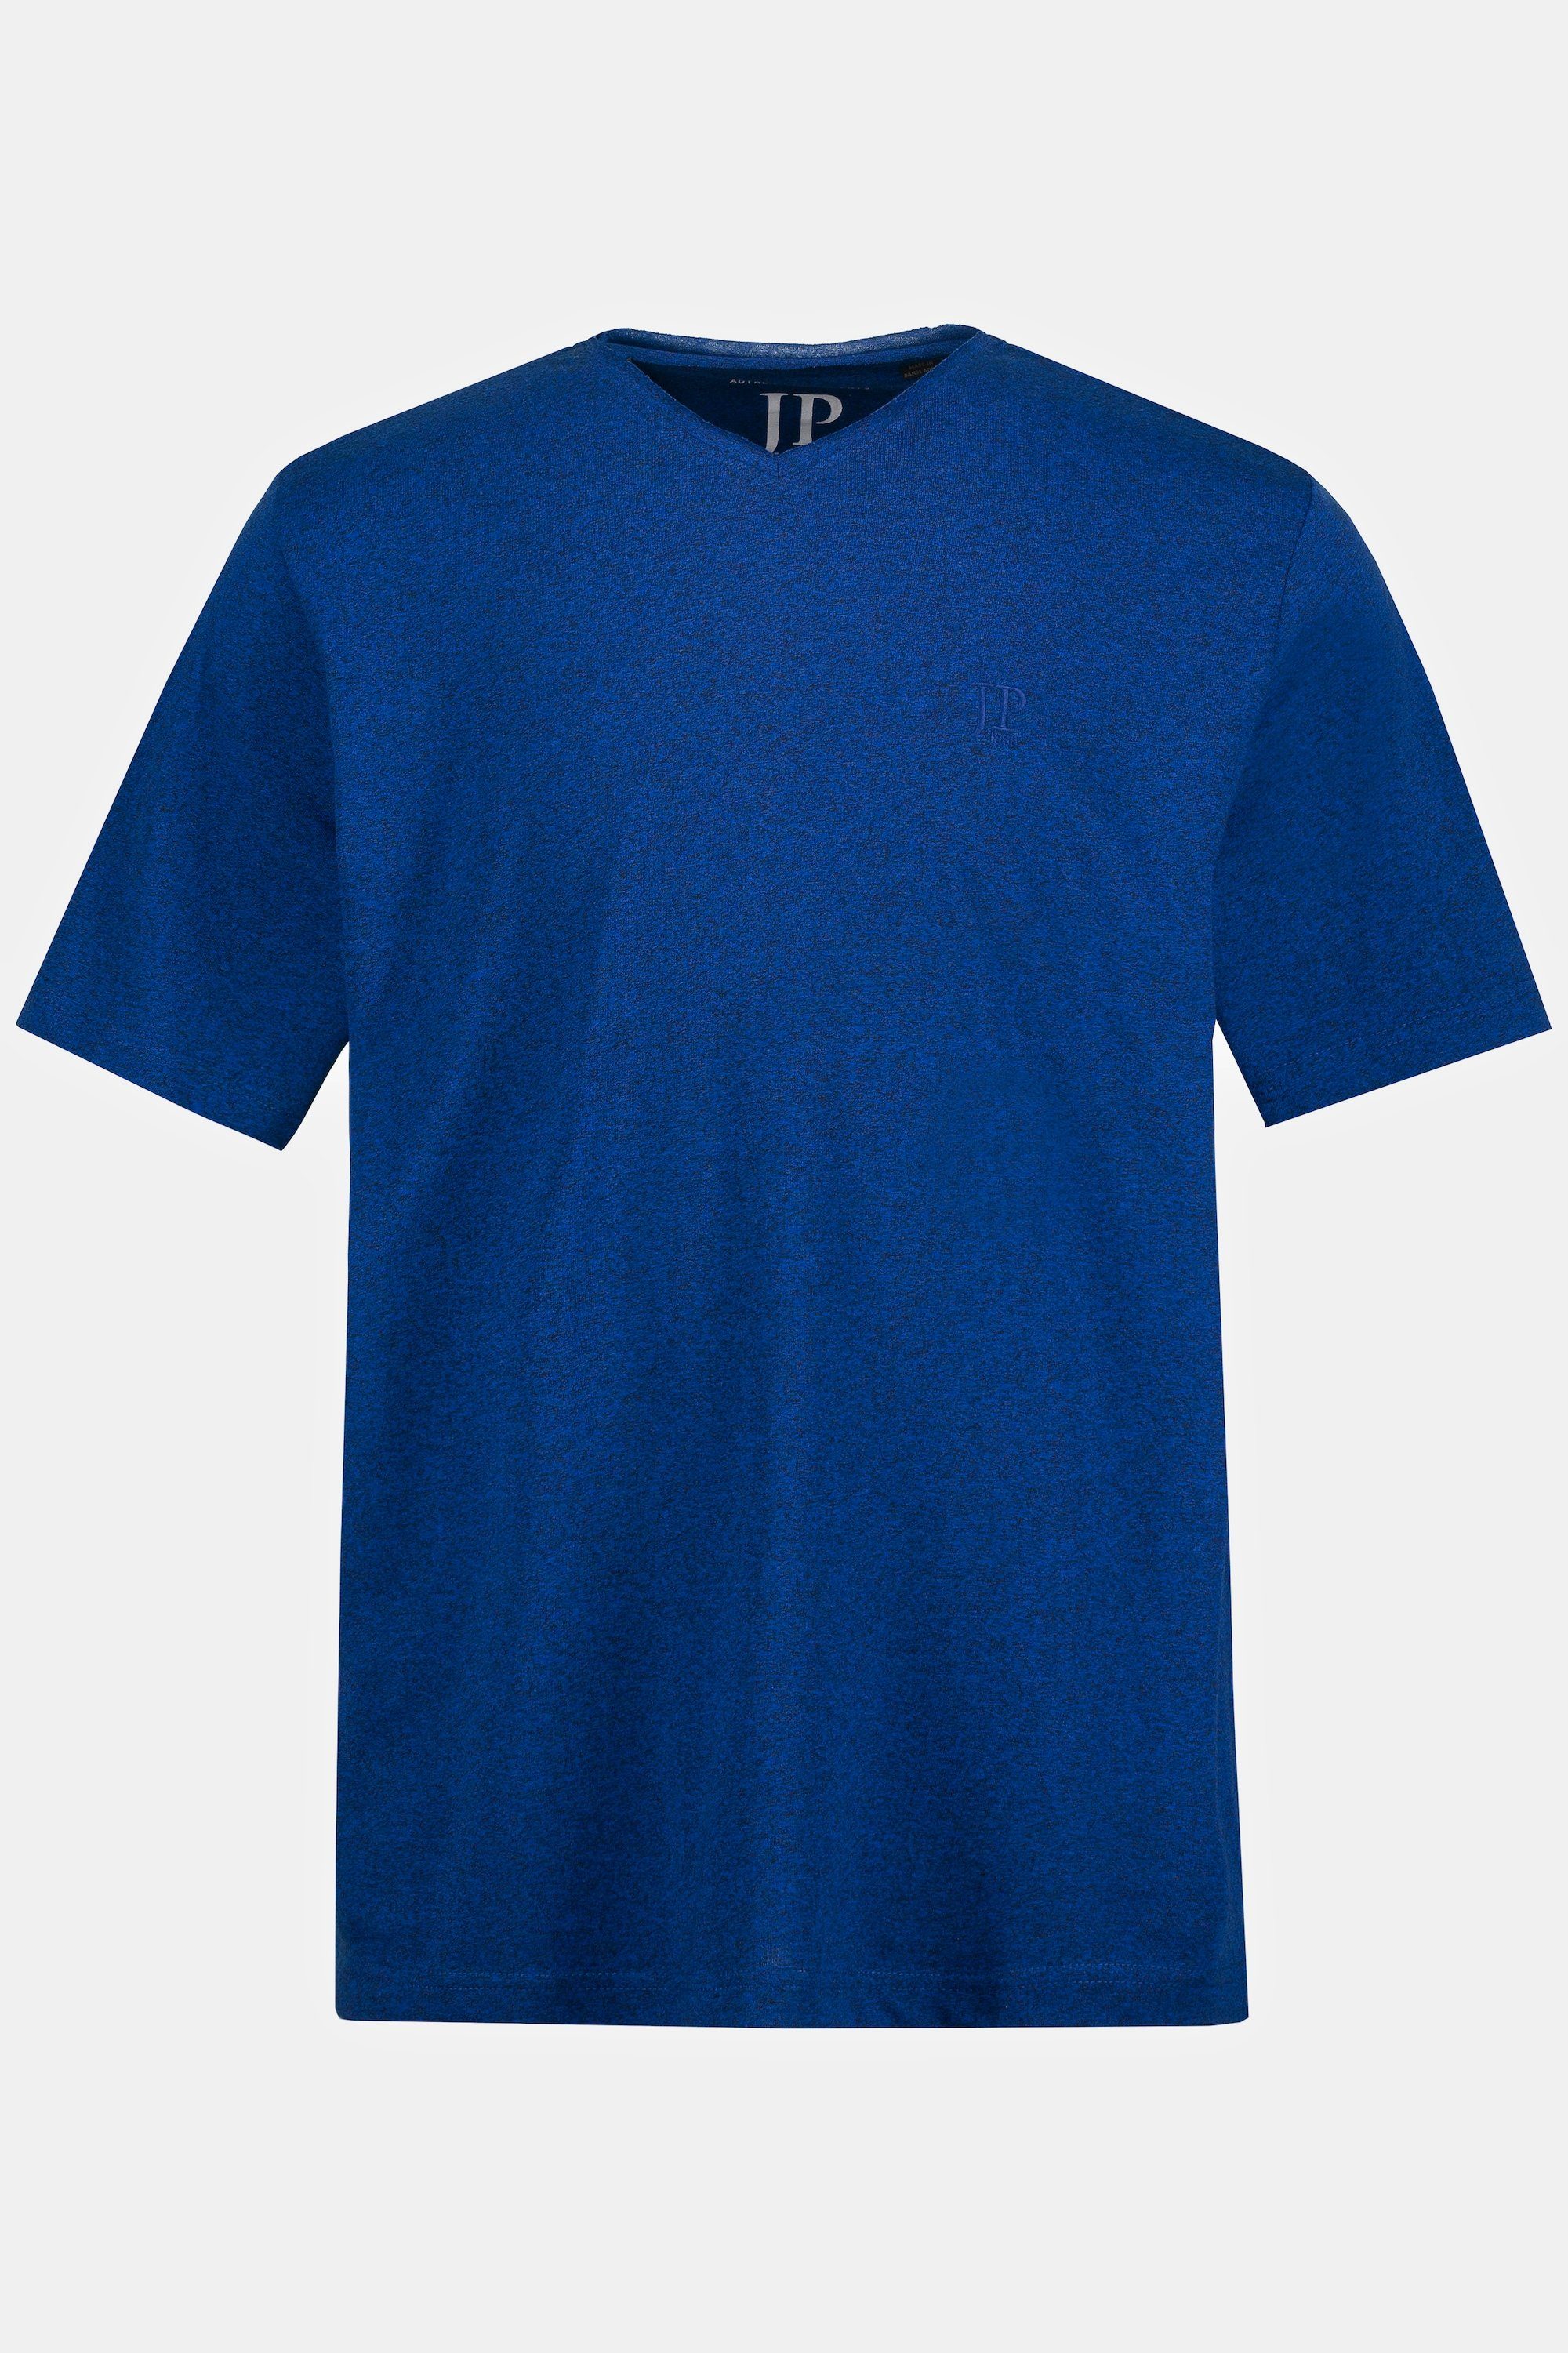 T-Shirt T-Shirt Halbarm V-Ausschnitt clematisblau JP1880